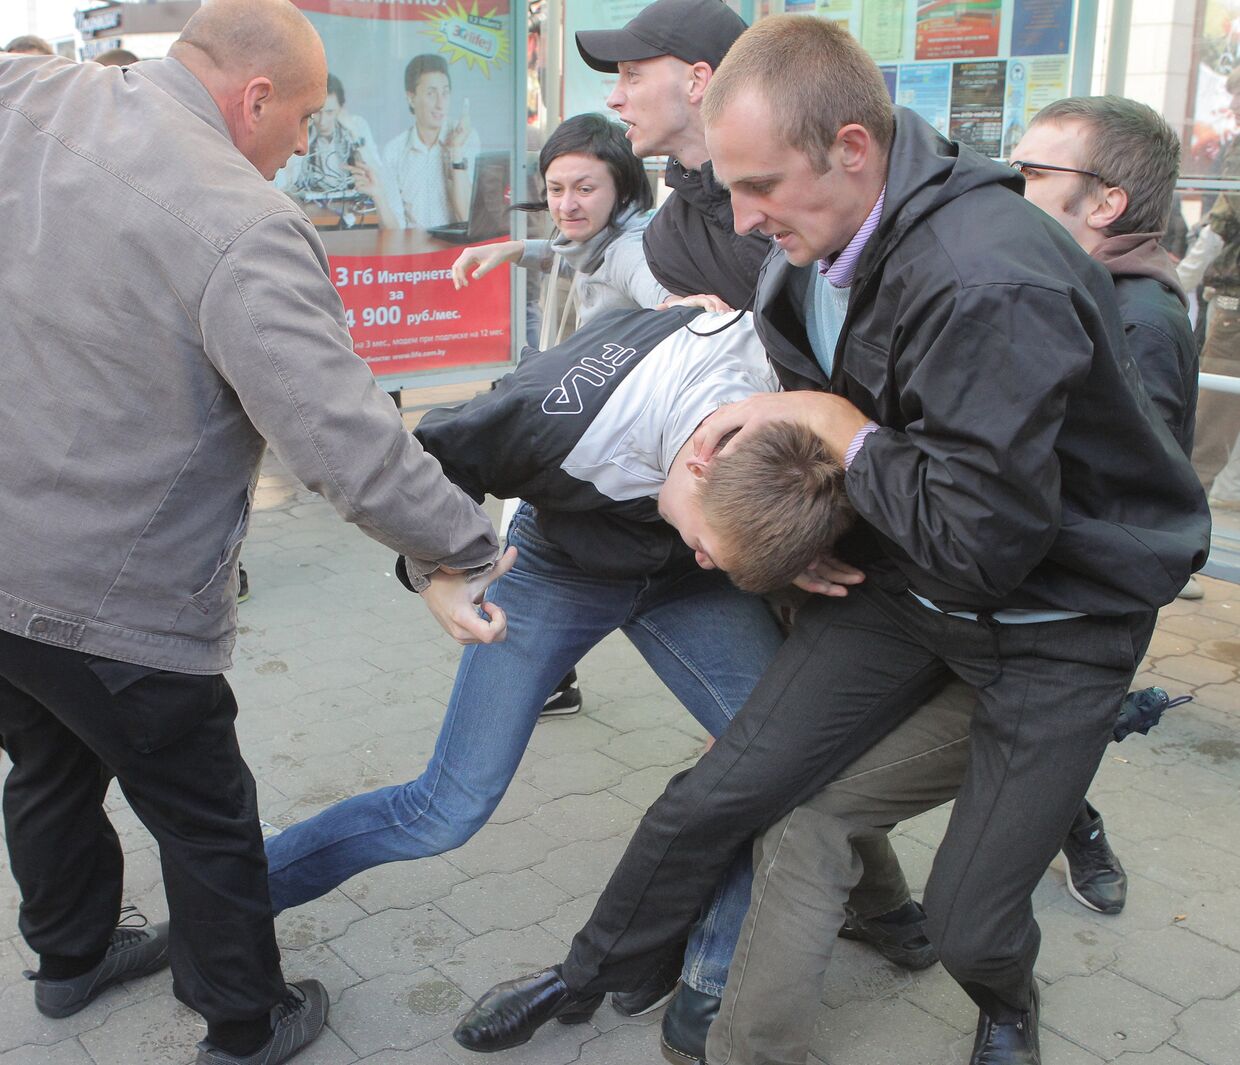 Задержание участников акции протеста движения Революция через социальные сети в День Независимости Белоруссии